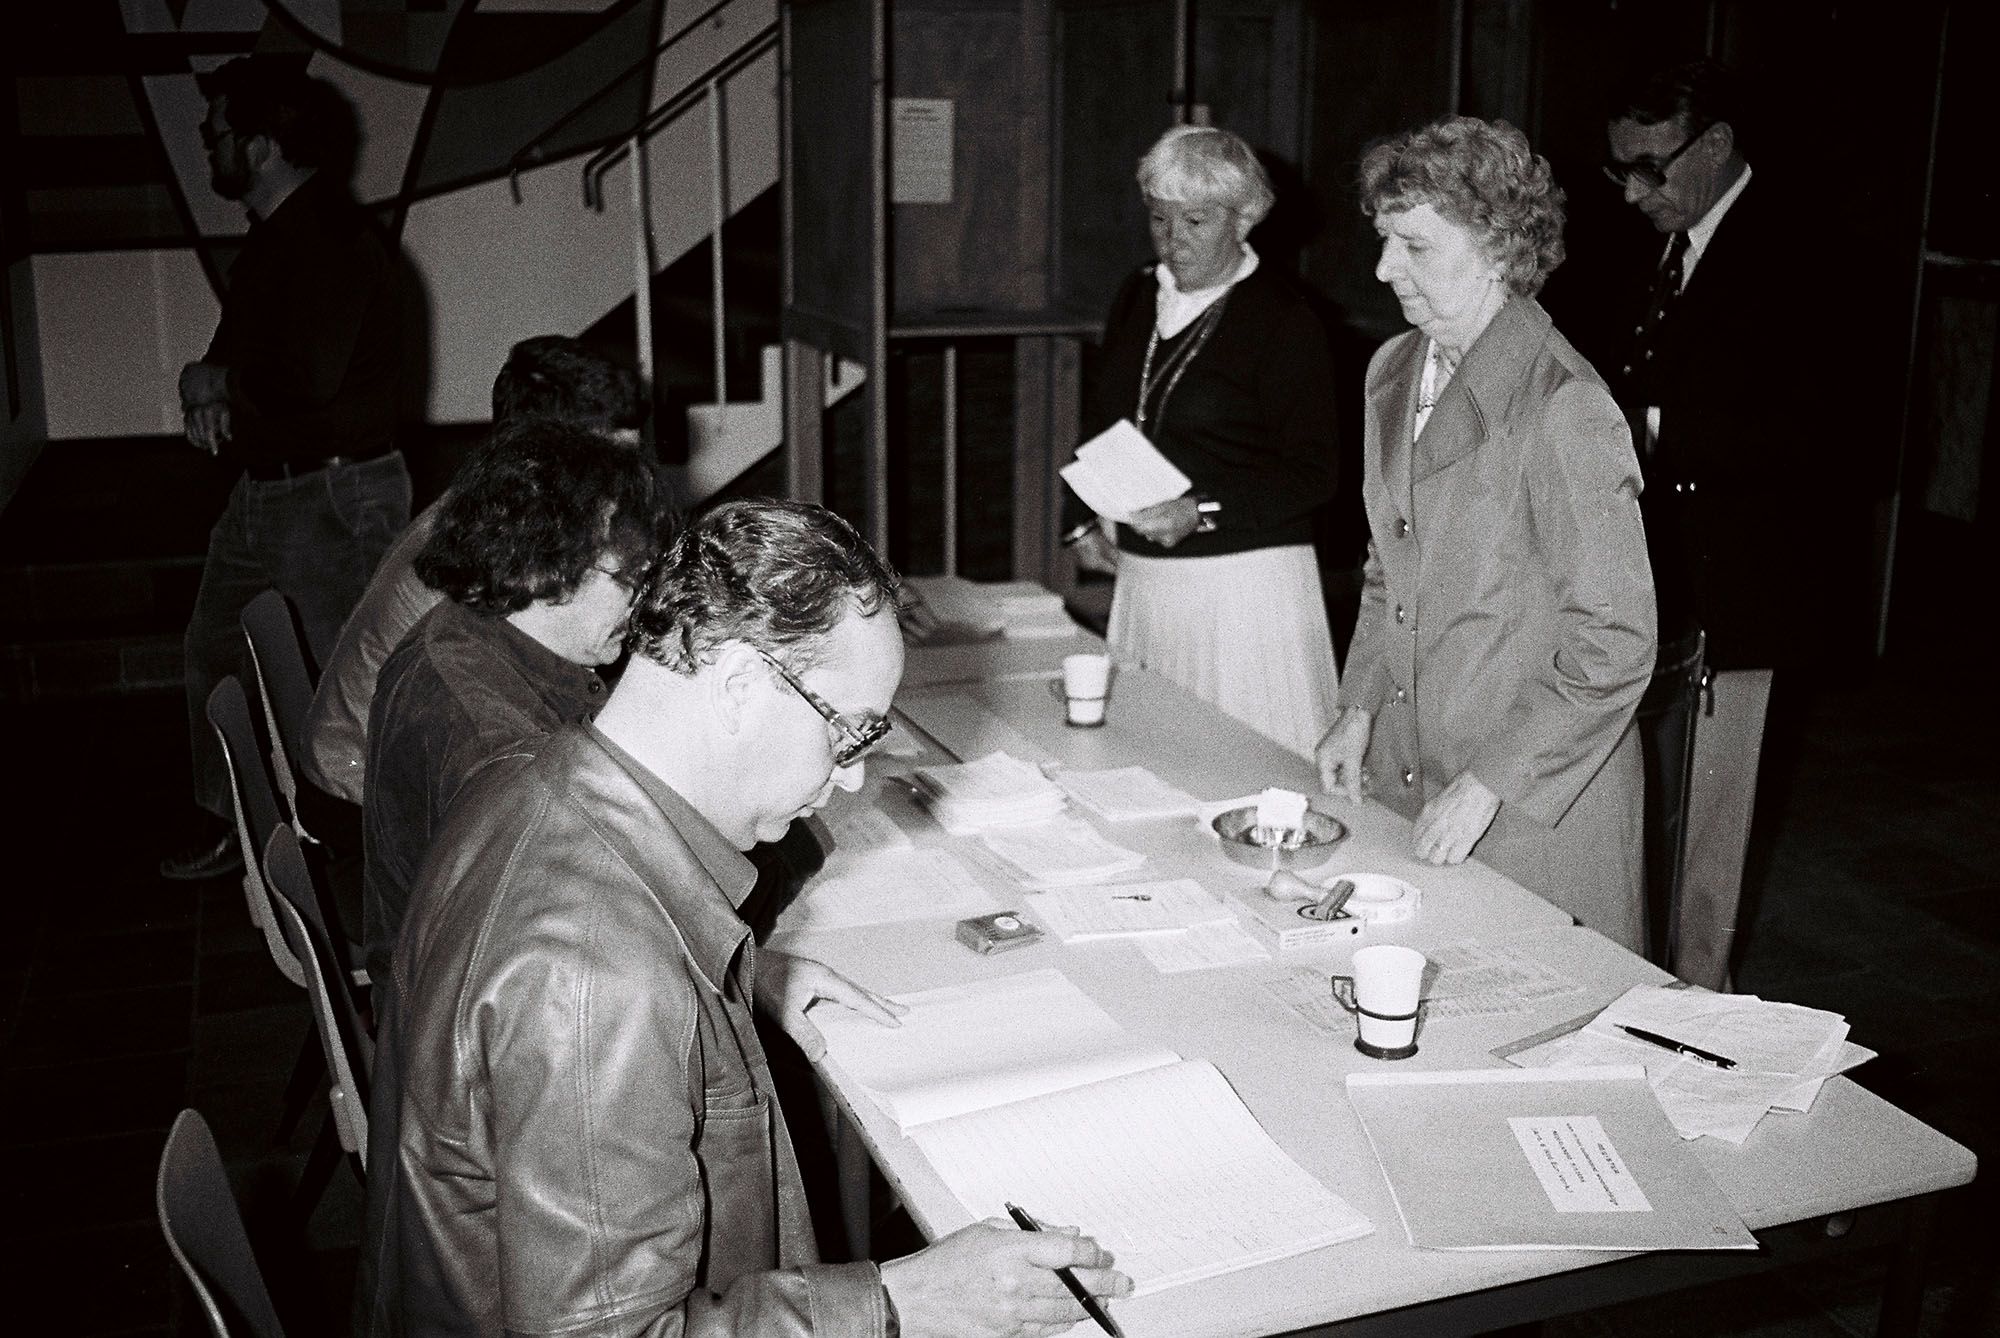 Die erste EU-Wahl 1979